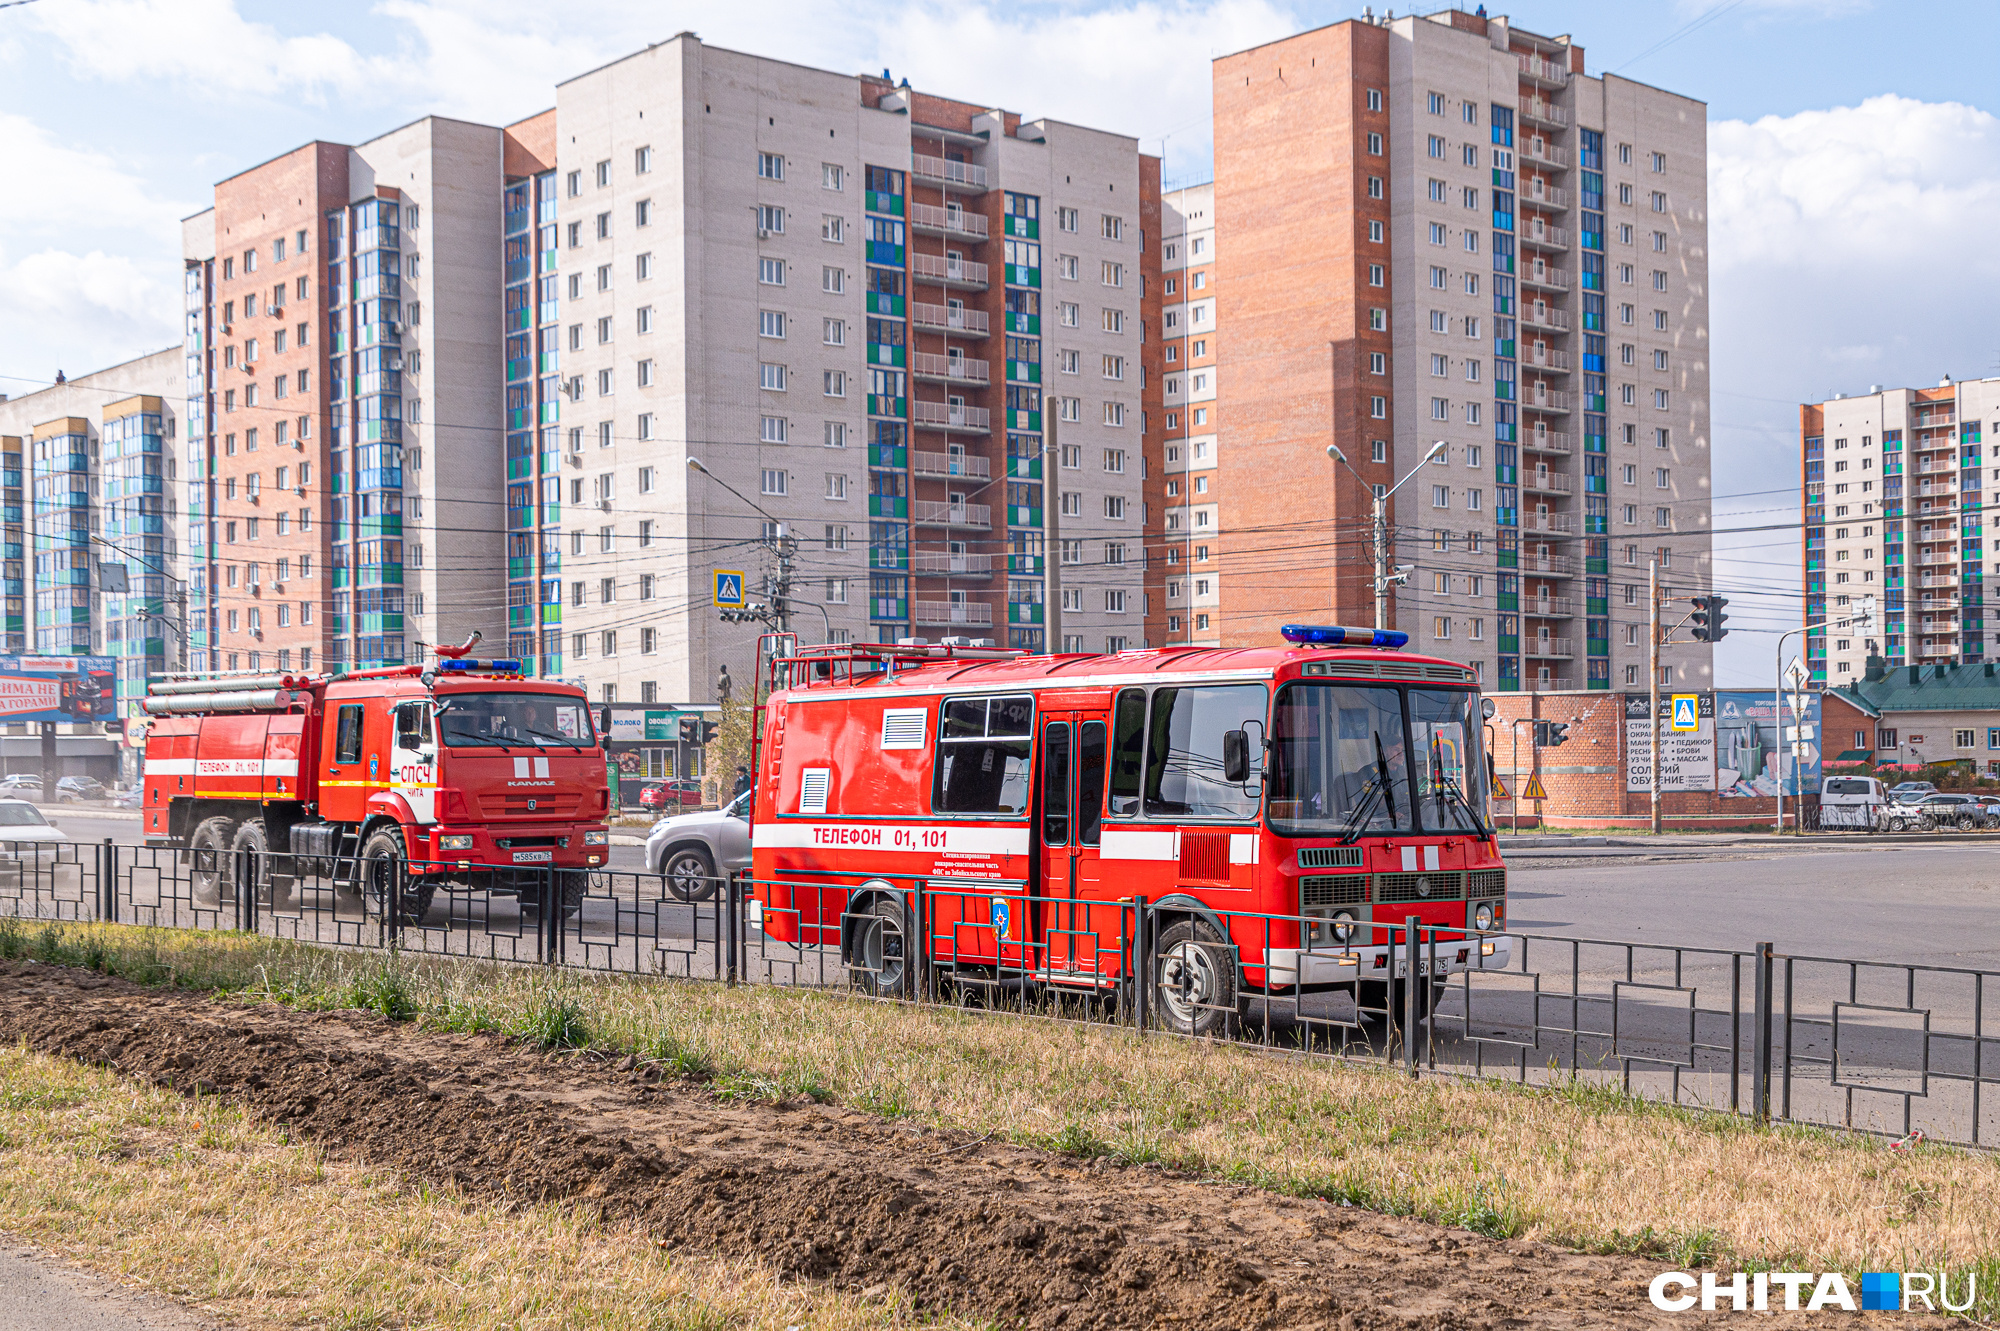 МЧС проведет пожарные учения в ТЦ «Царский» в Чите